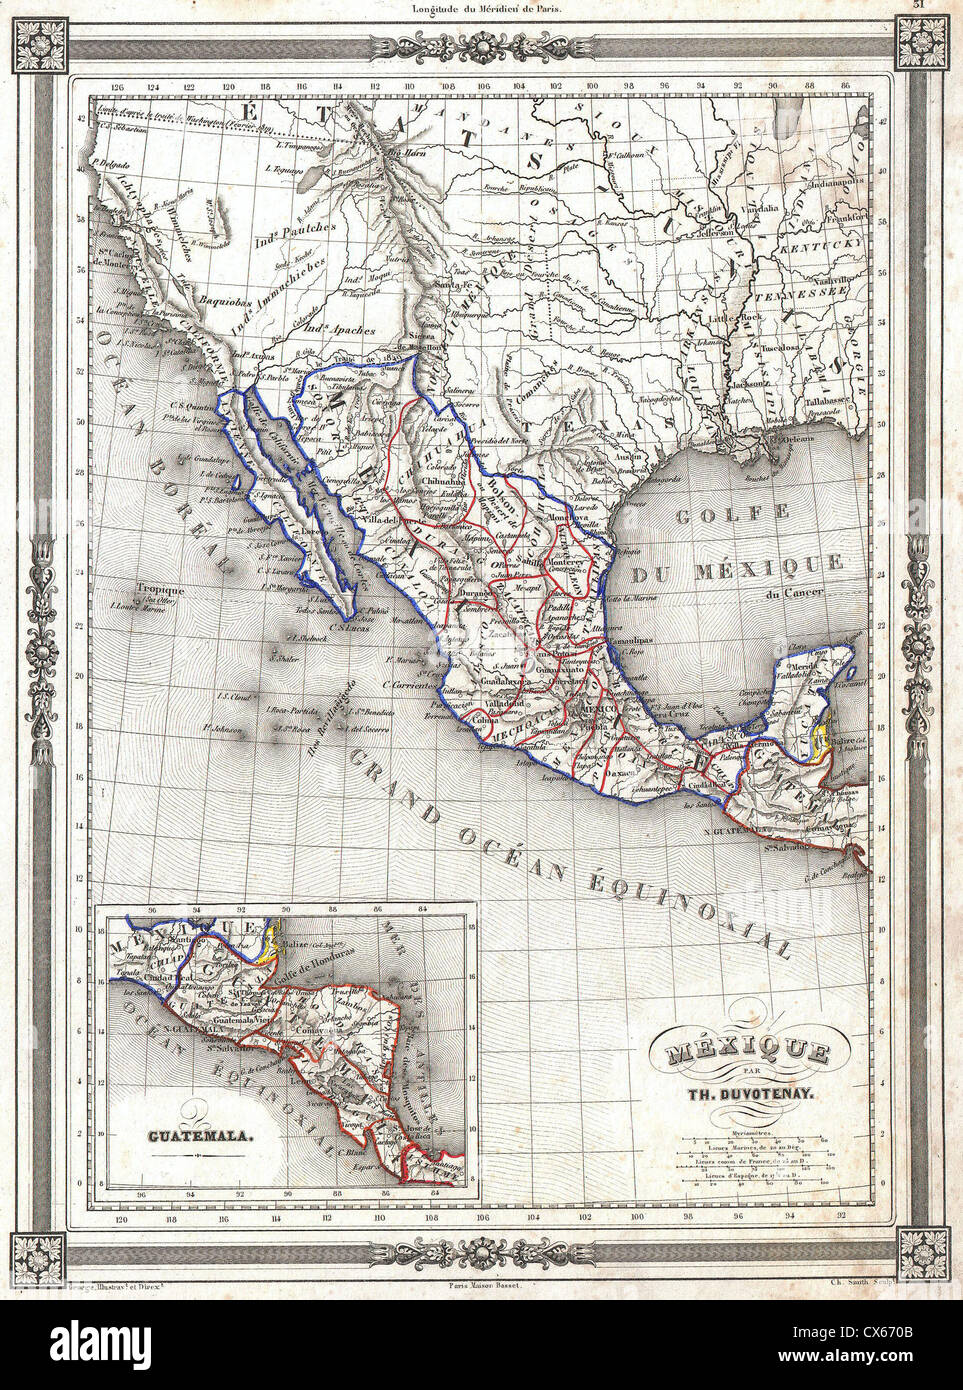 1852 Duvotenay Mapa de México ( incluye Texas y California ) superior Foto de stock